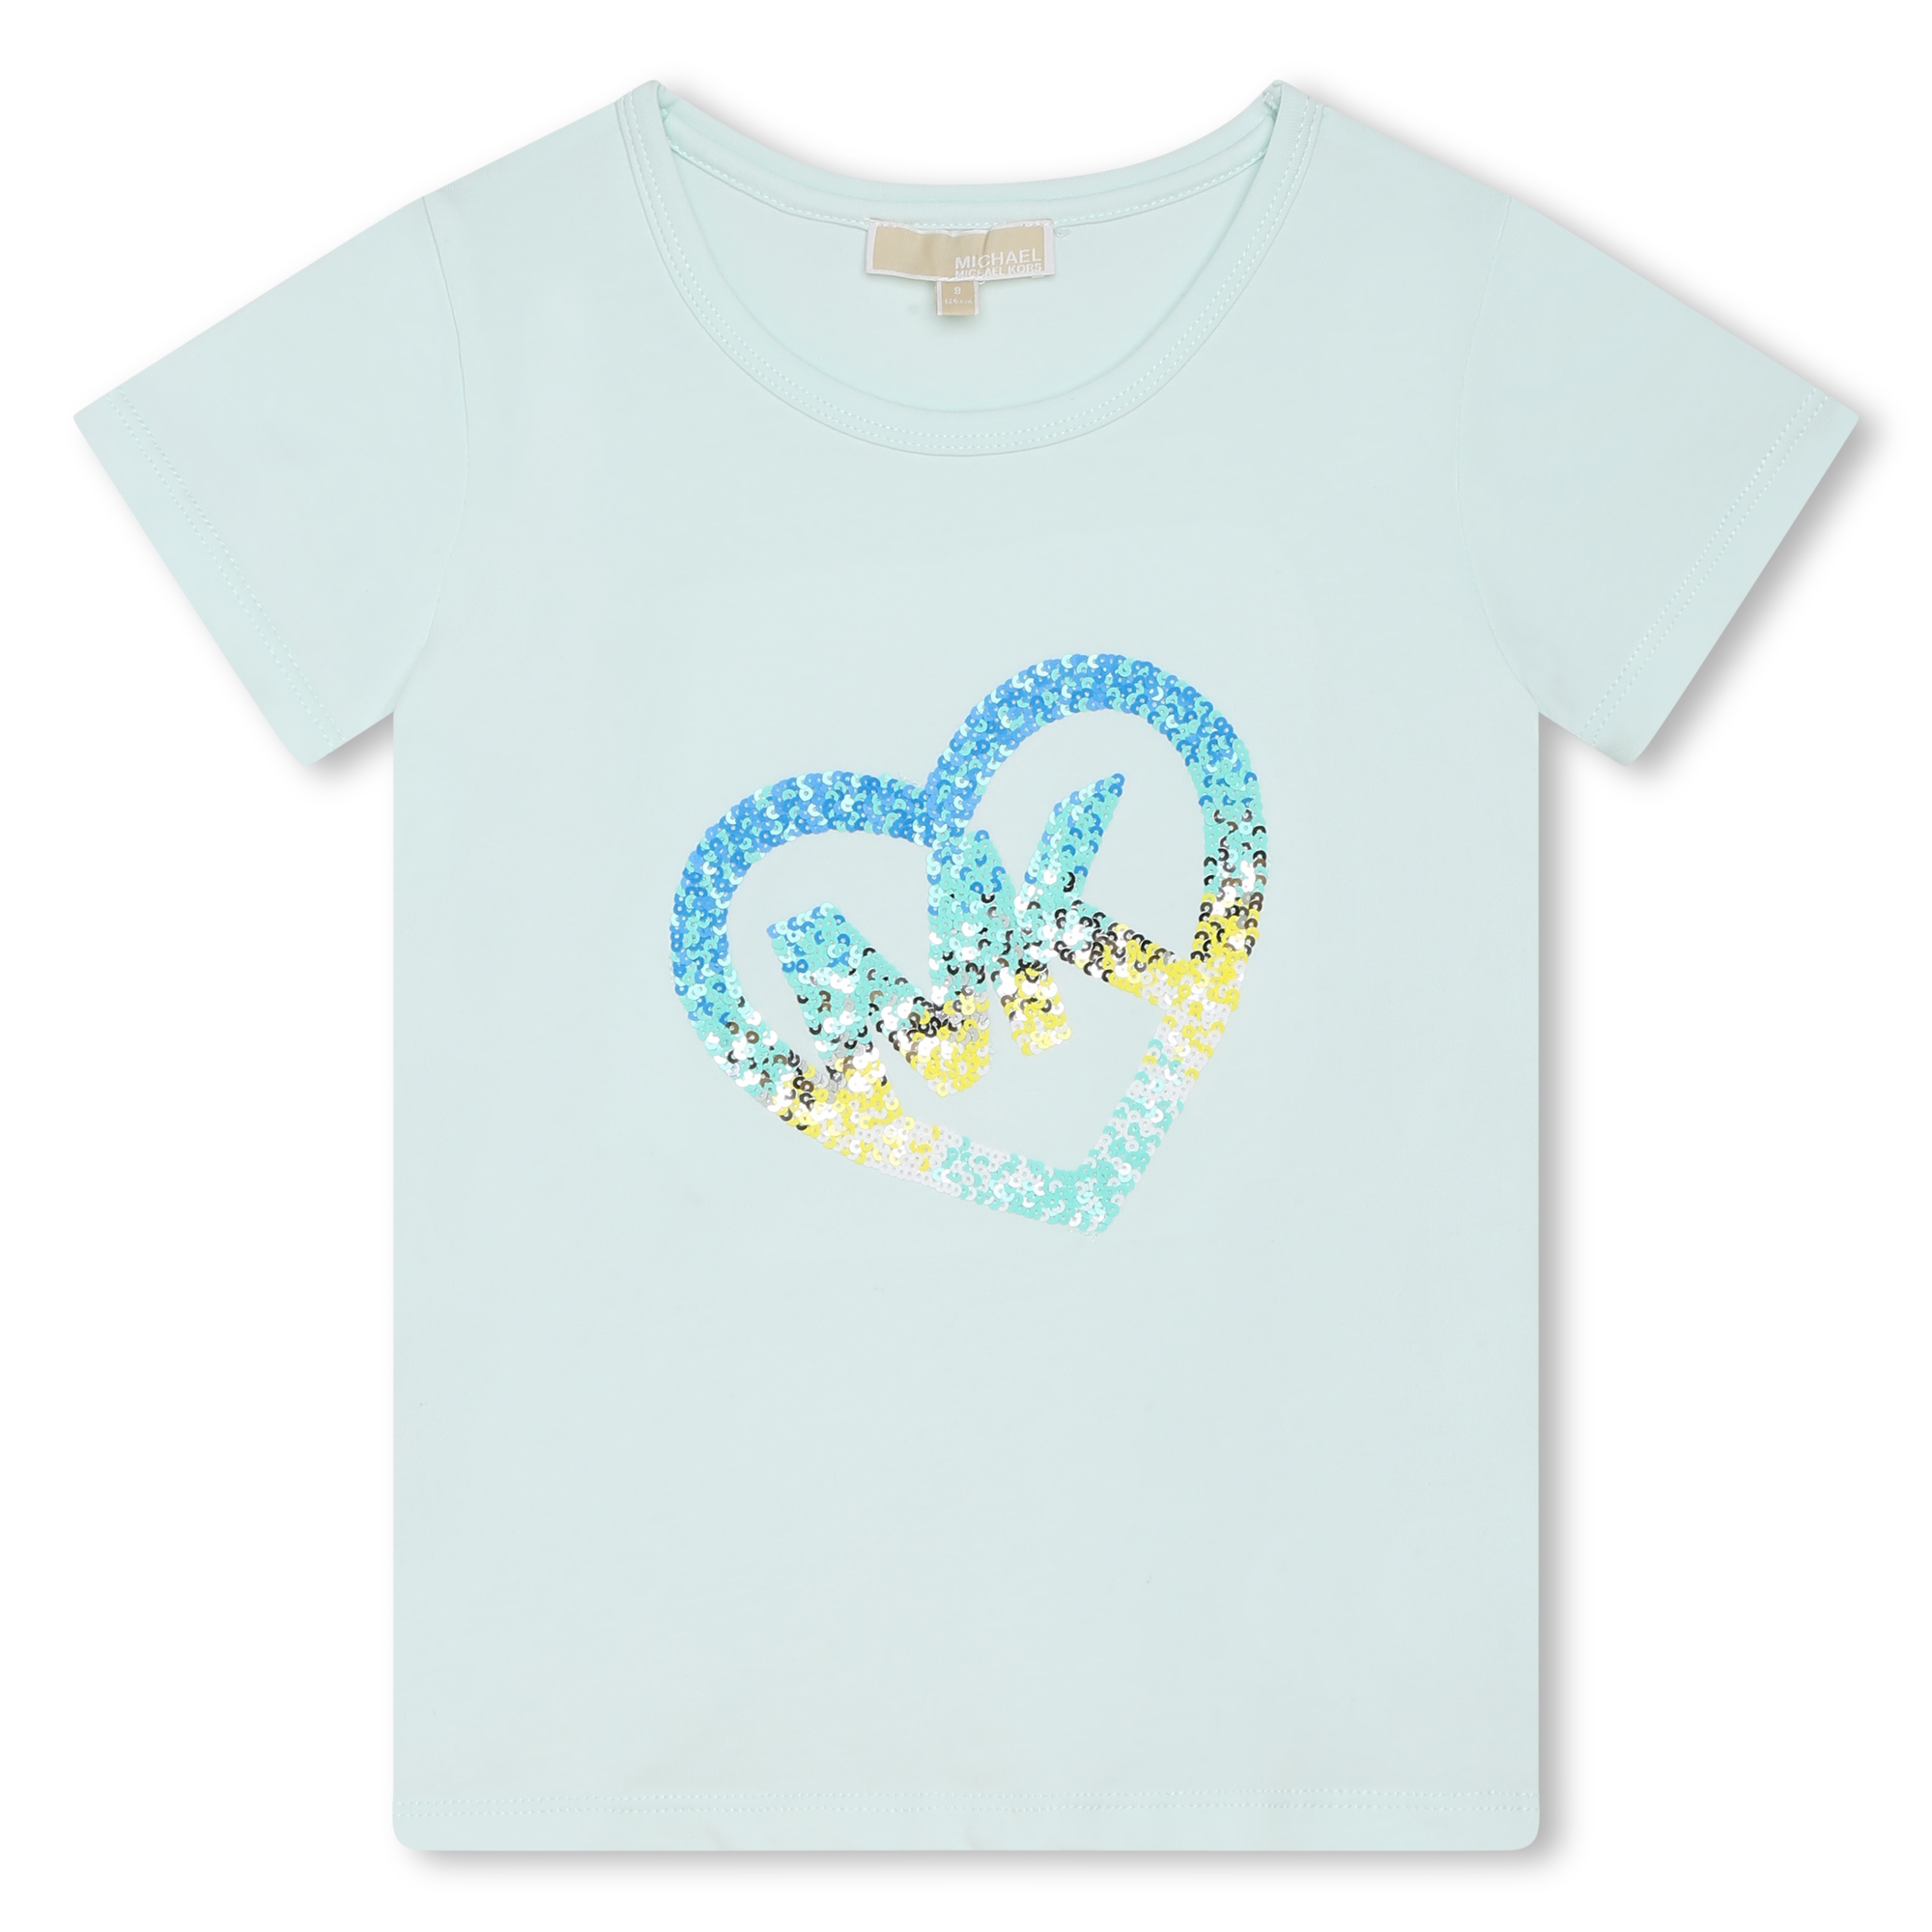 Multicoloured-sequin T-shirt MICHAEL KORS for GIRL